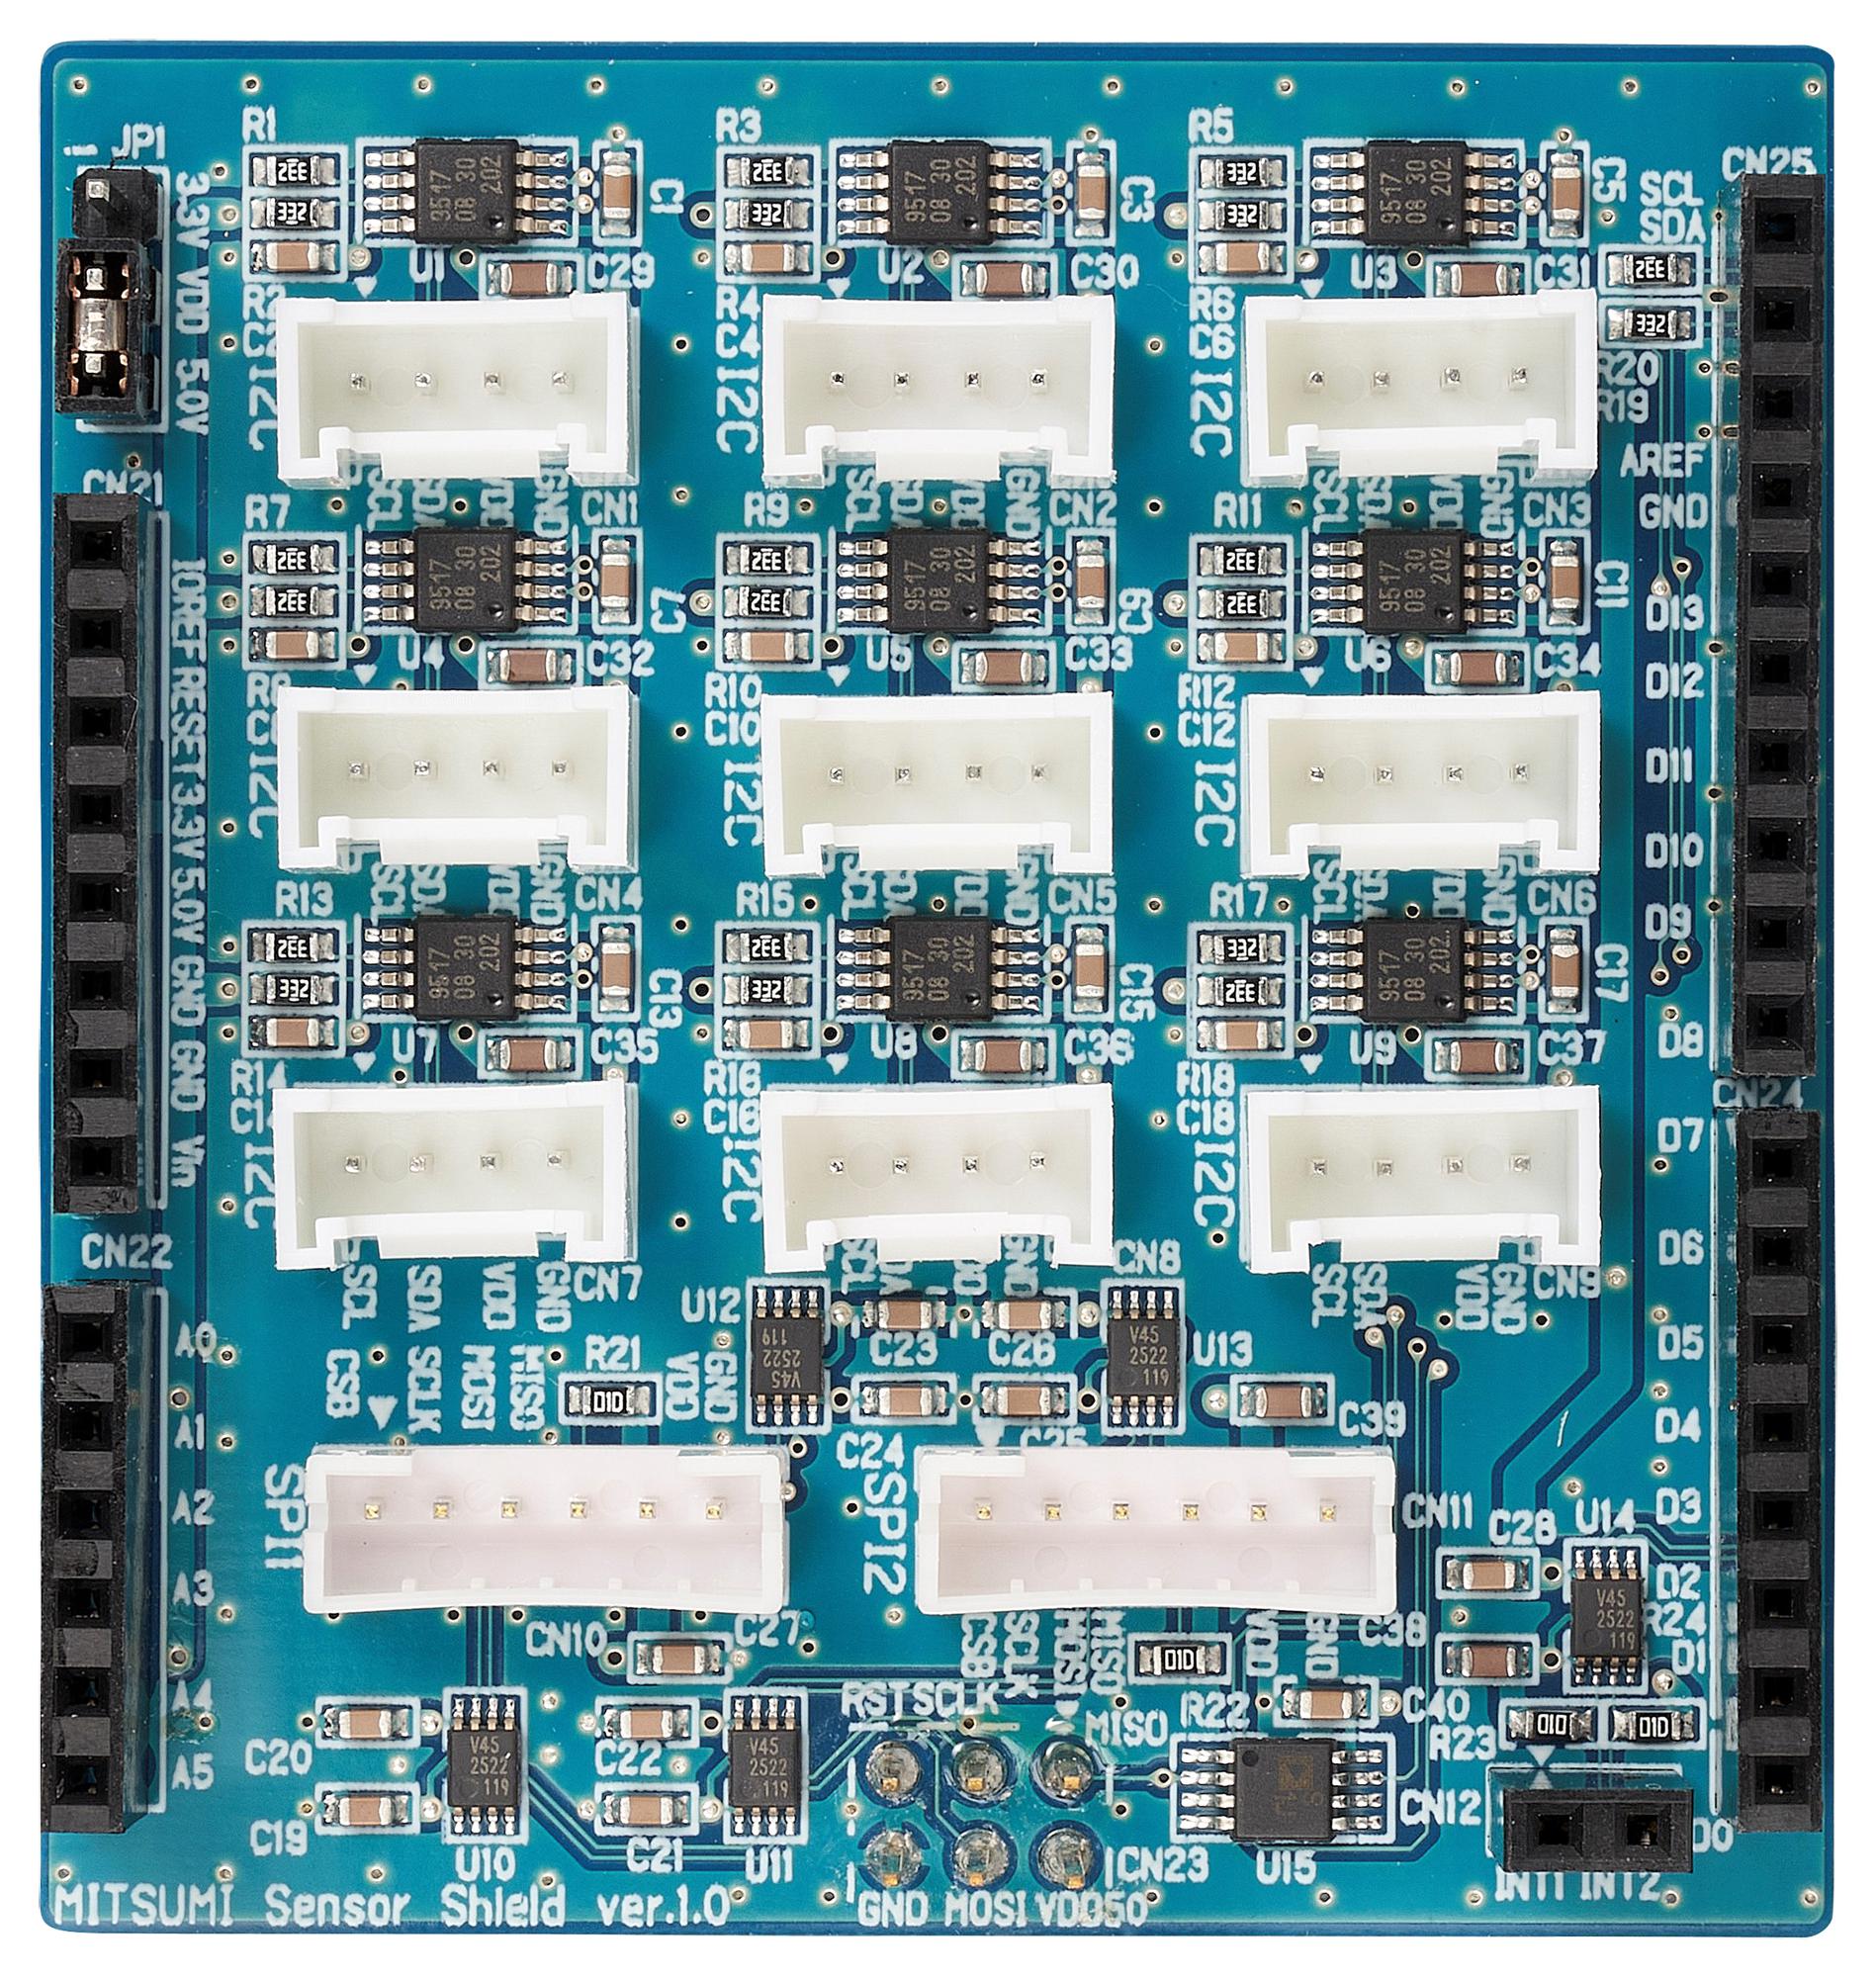 Mitsumi Sensor Shield Sensor Shield, Arduino Board